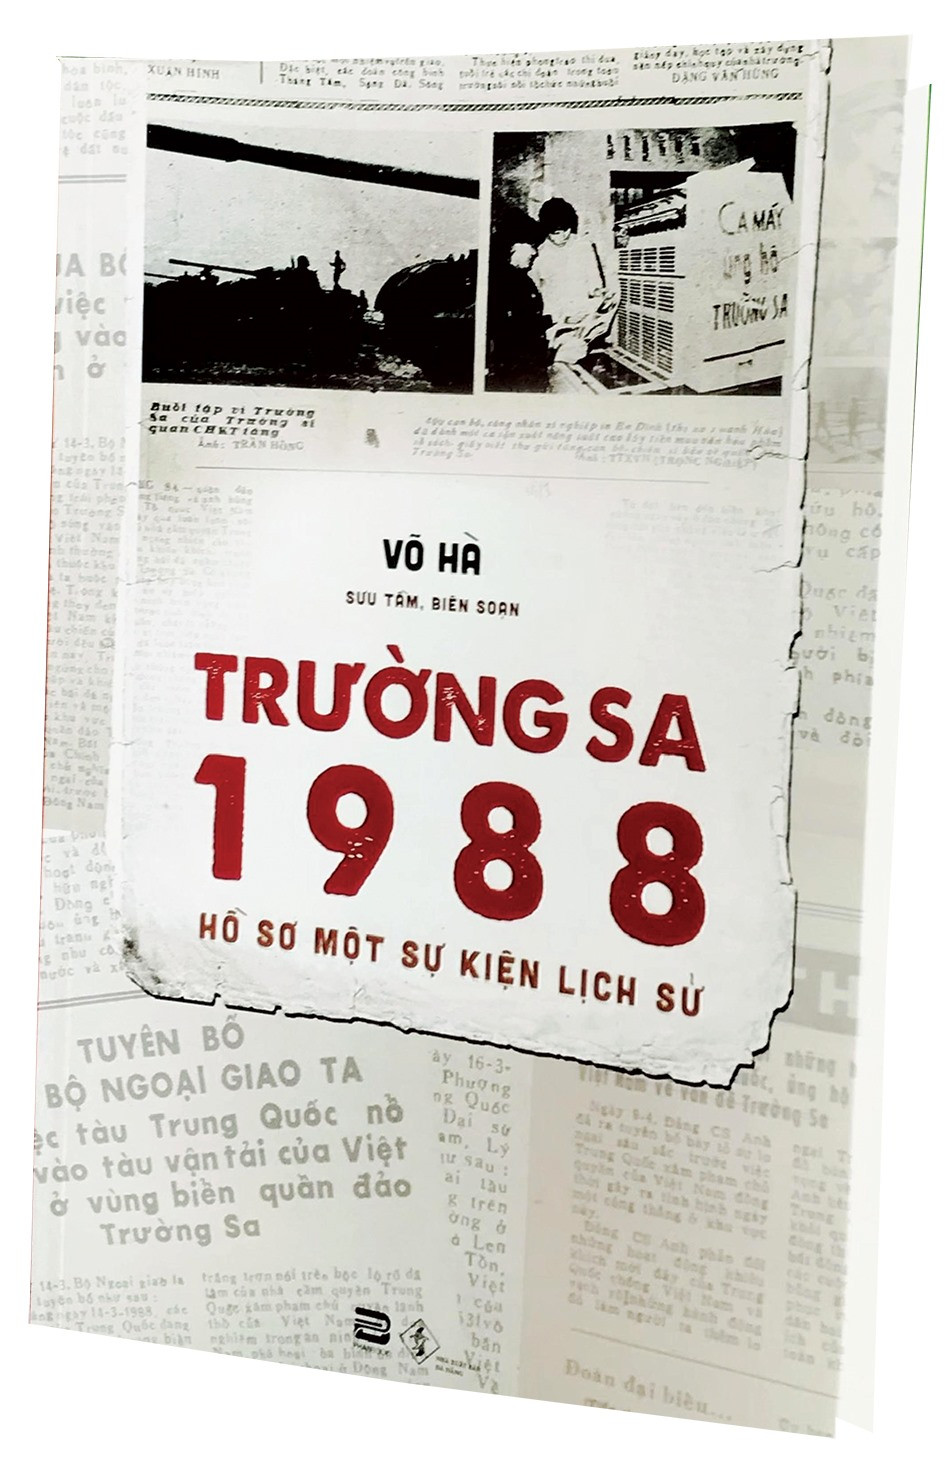 Bìa sách “Trường Sa 1988 - Hồ sơ một sự kiện lịch sử“.